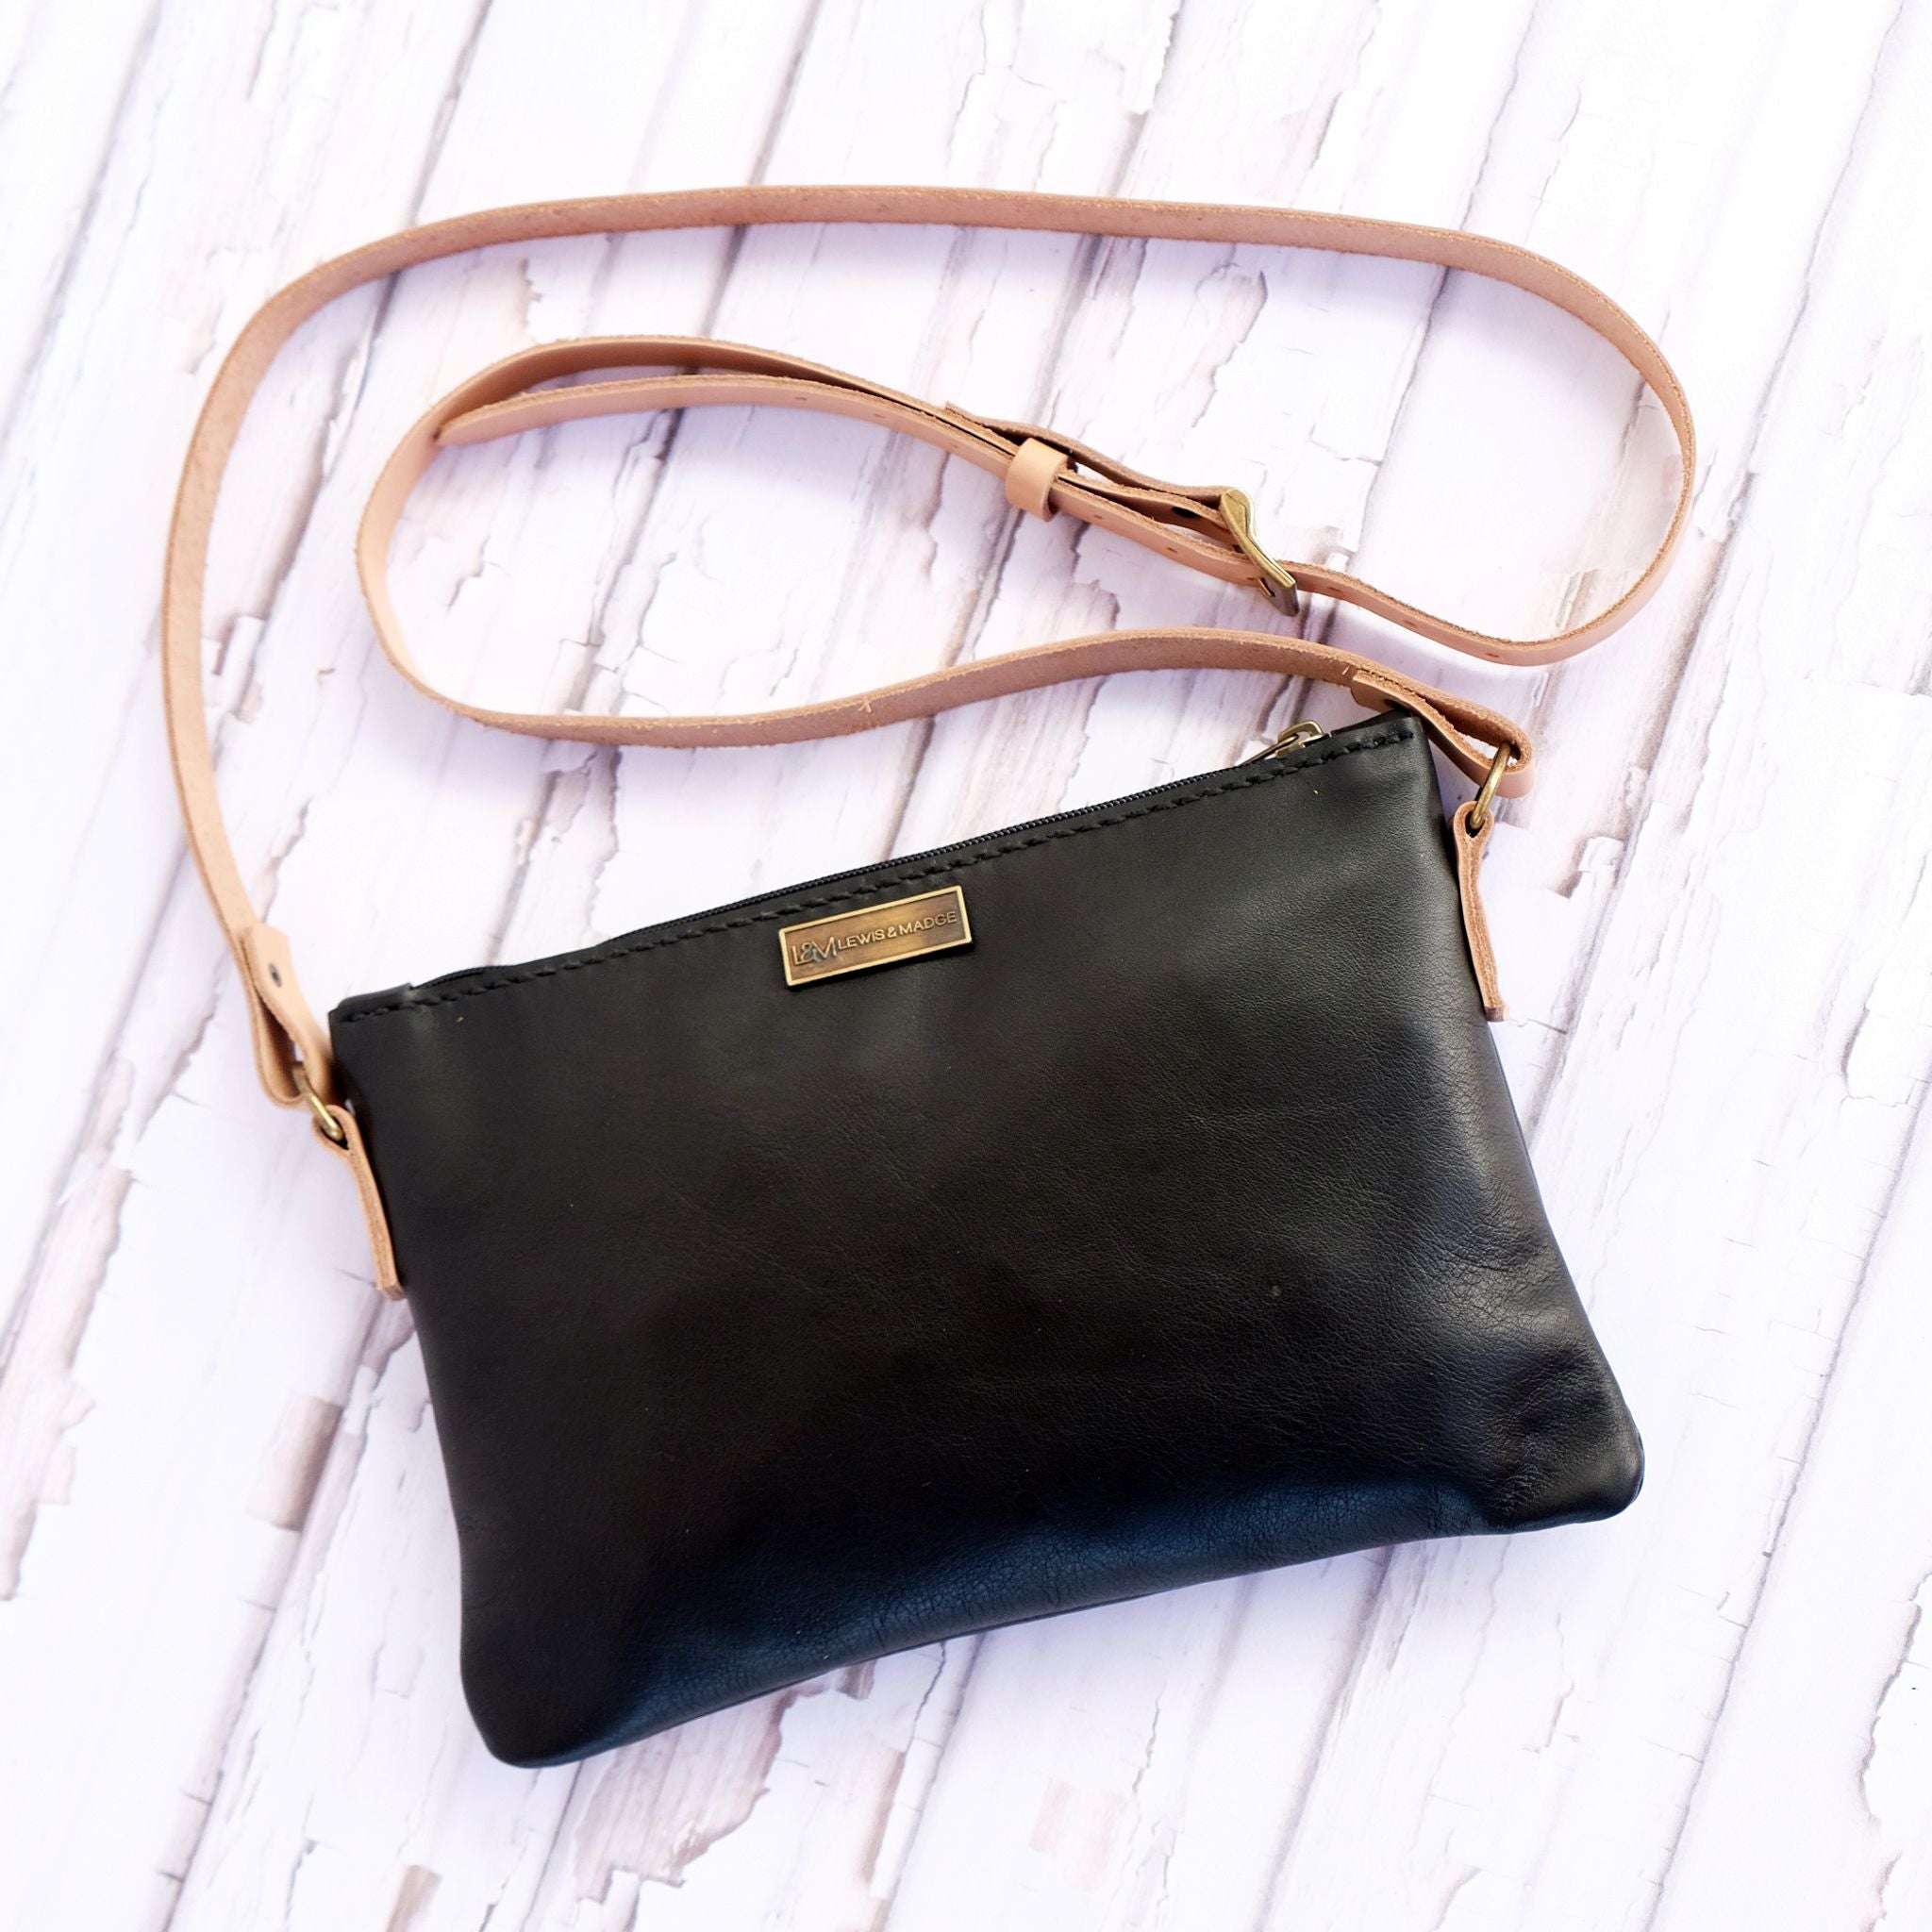 Zouk bags | Zouk Sling Bags Review | Trendy Handbags | Sling bag | Office  bags #zouk #zoukbags - YouTube